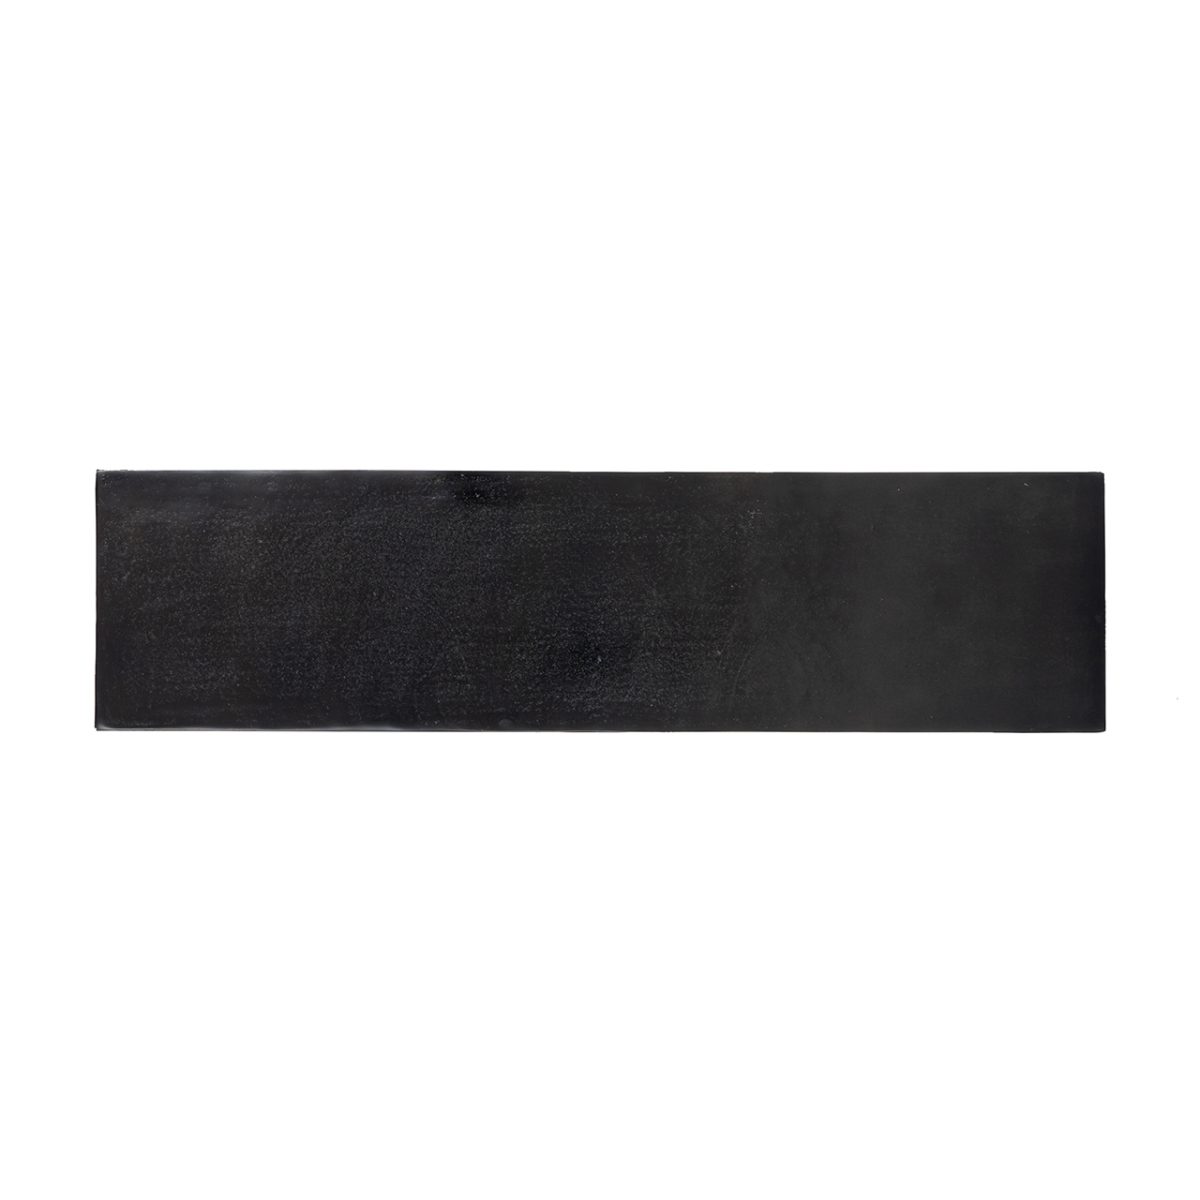 825070 - Wandtafel Bolder aluminium zwart (Black)